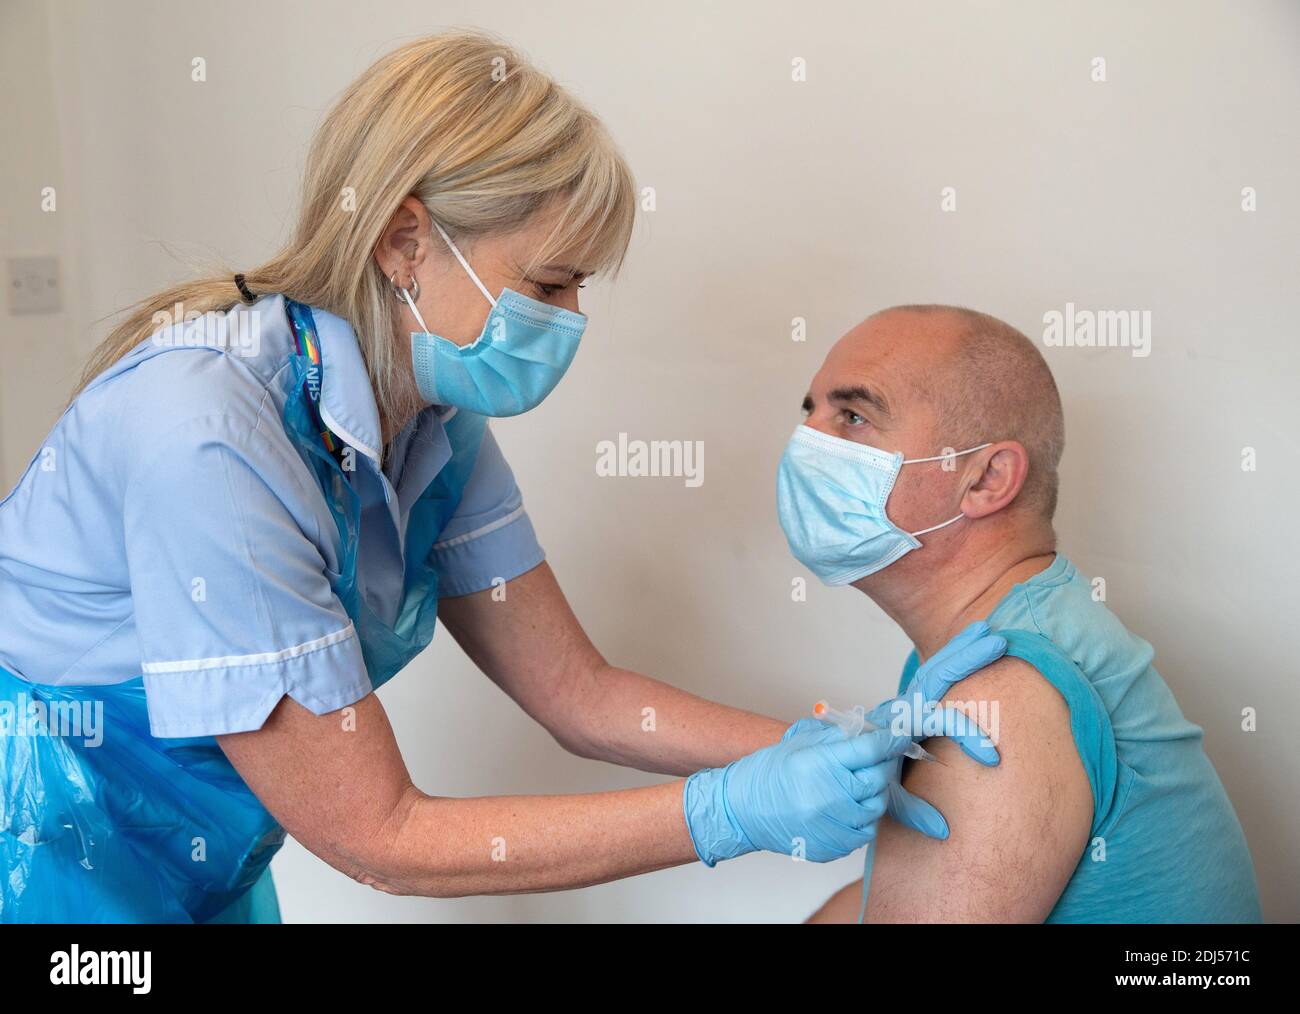 Ein Patient erhält einen Covid-Impfstoff. Covid-Tests an einem Patienten. Stockfoto